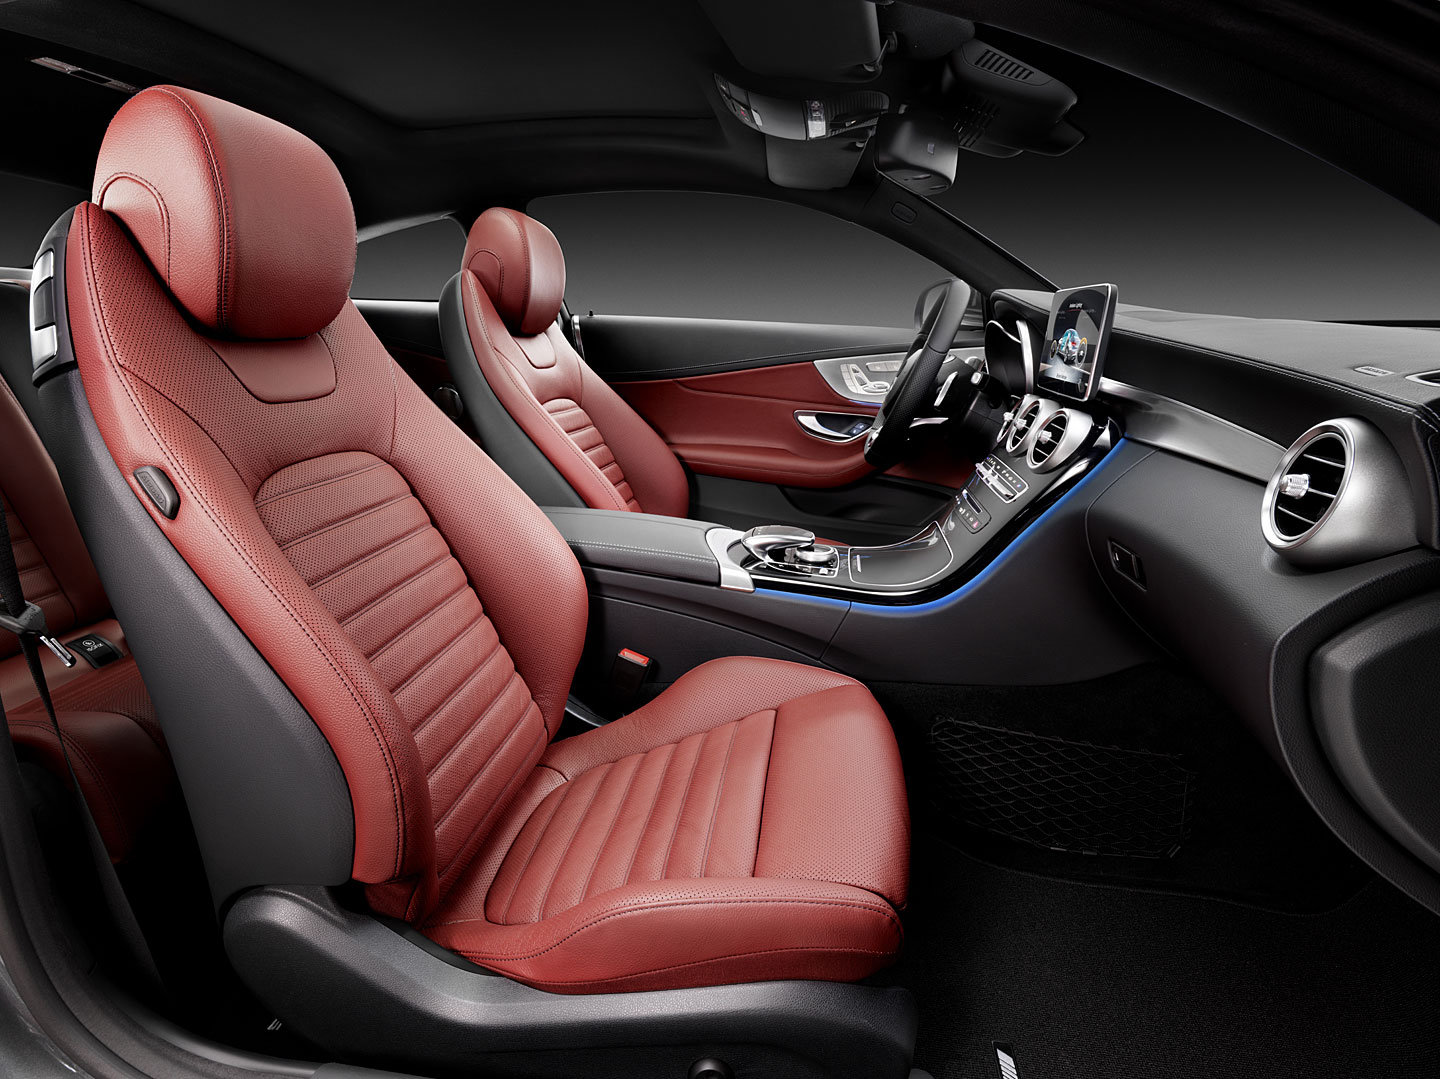 Interier Mercedesu-Benz C Coupe se nese v luxusním duchu současných vozů značky.